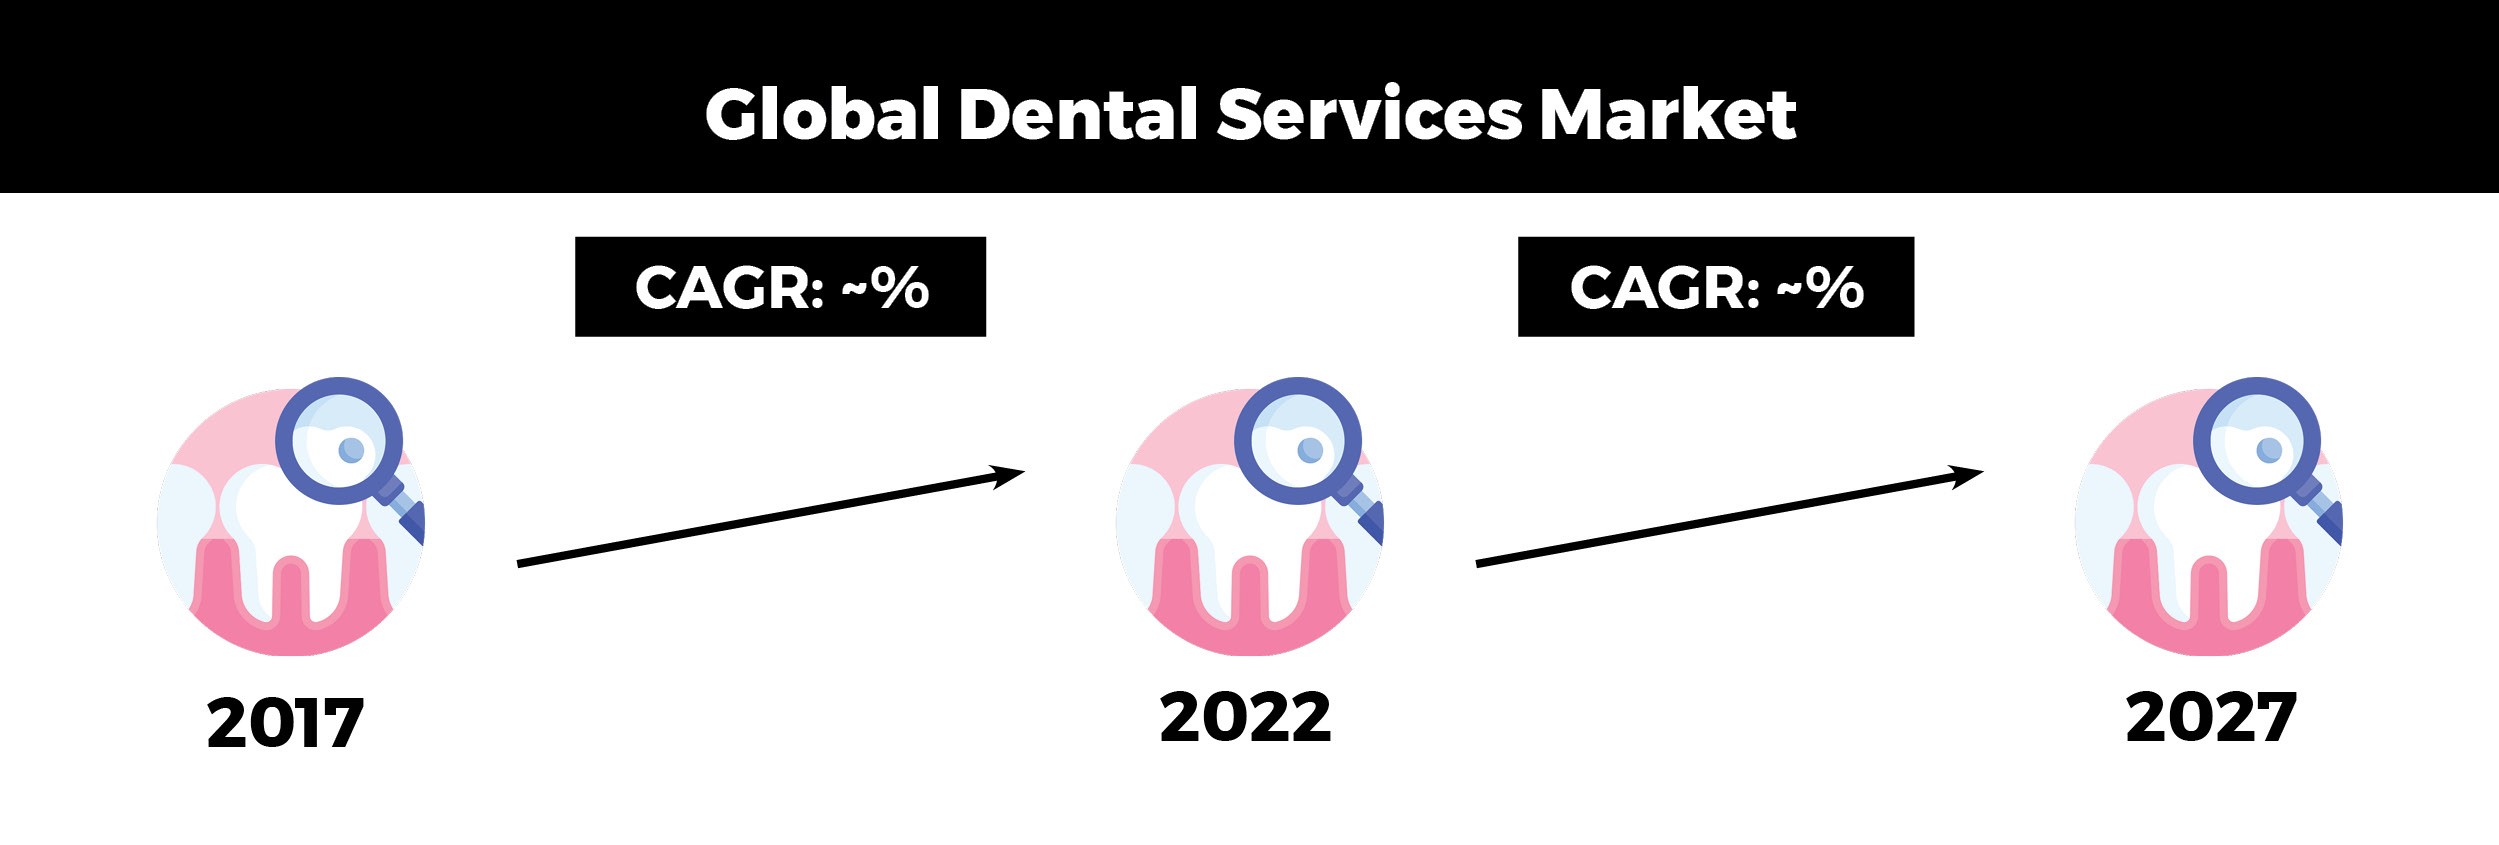 global_dental_services_market_chart